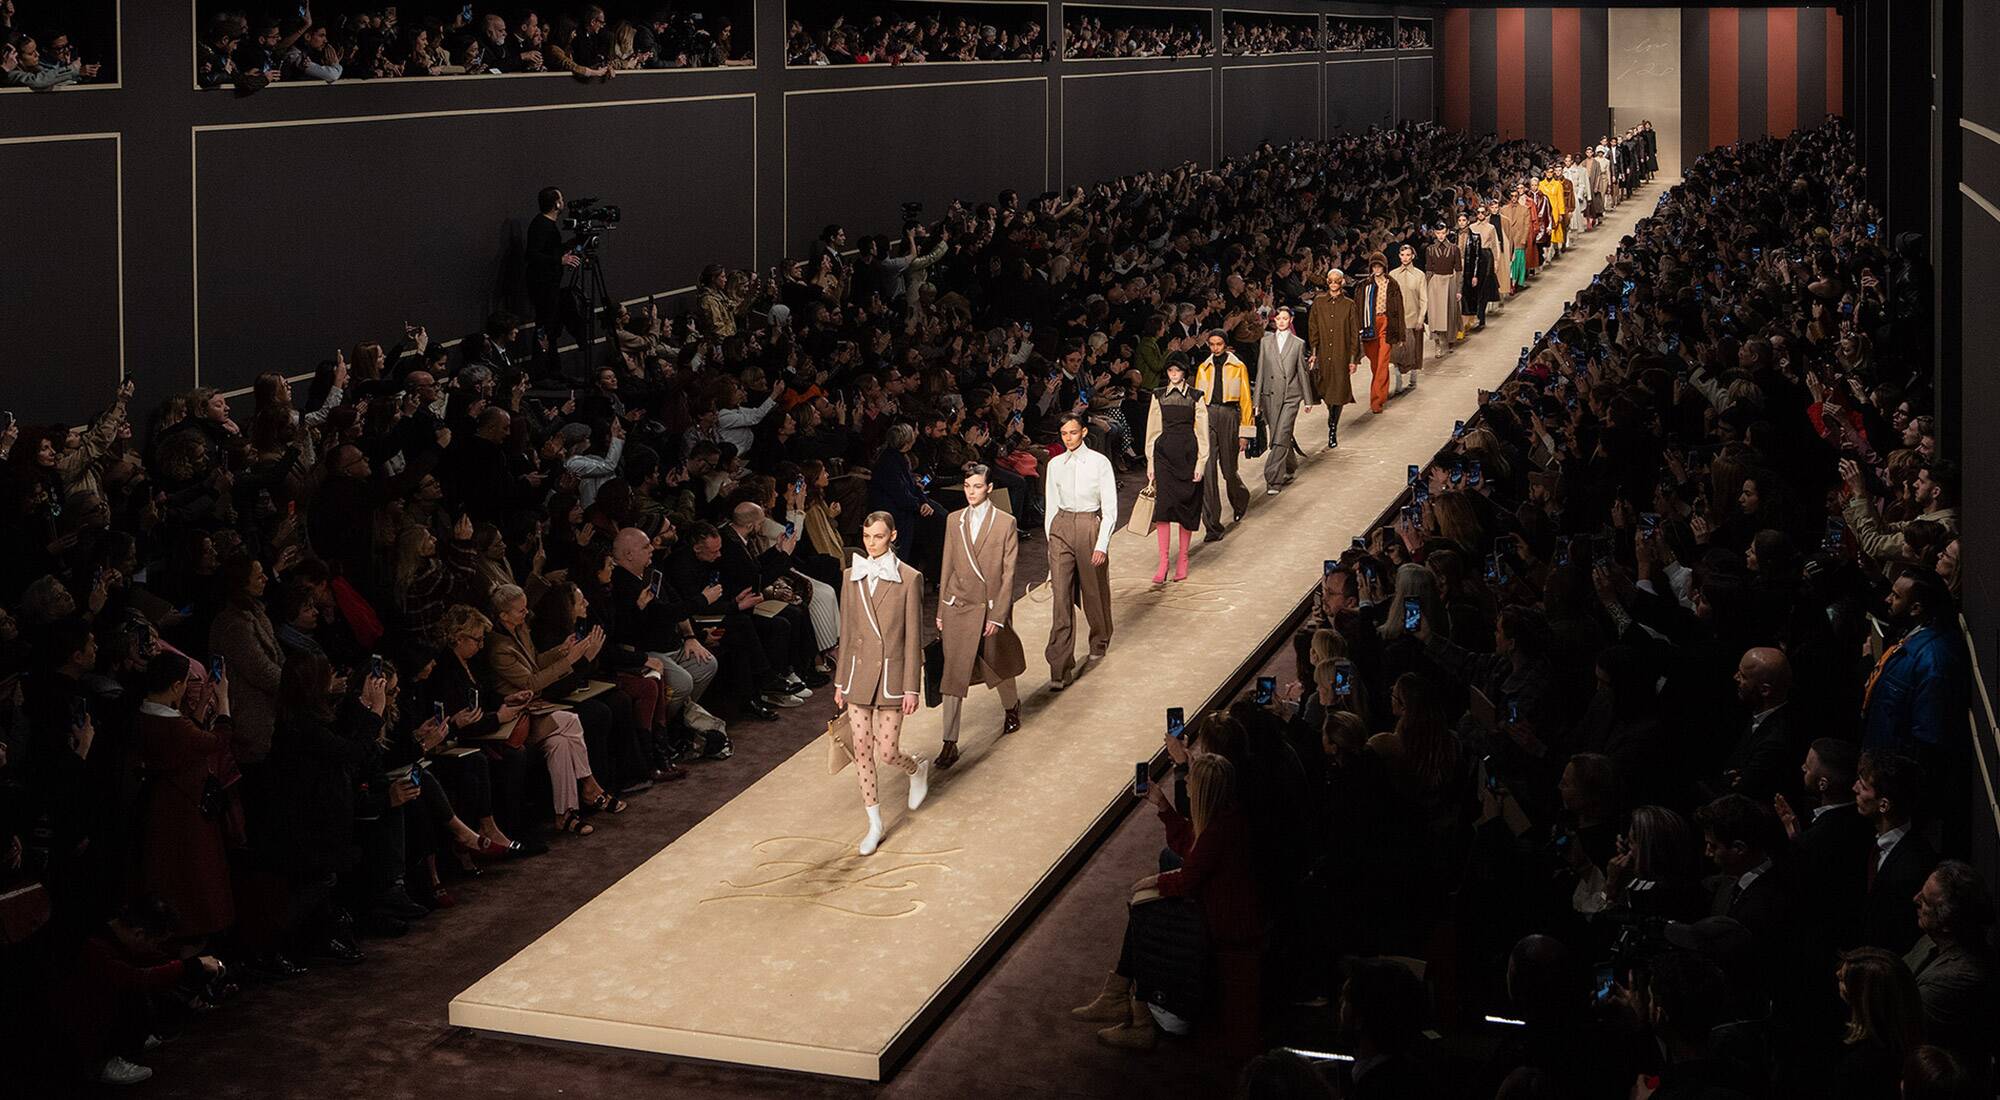 Fendi at Milan fashion week: a memorial to Karl Lagerfeld